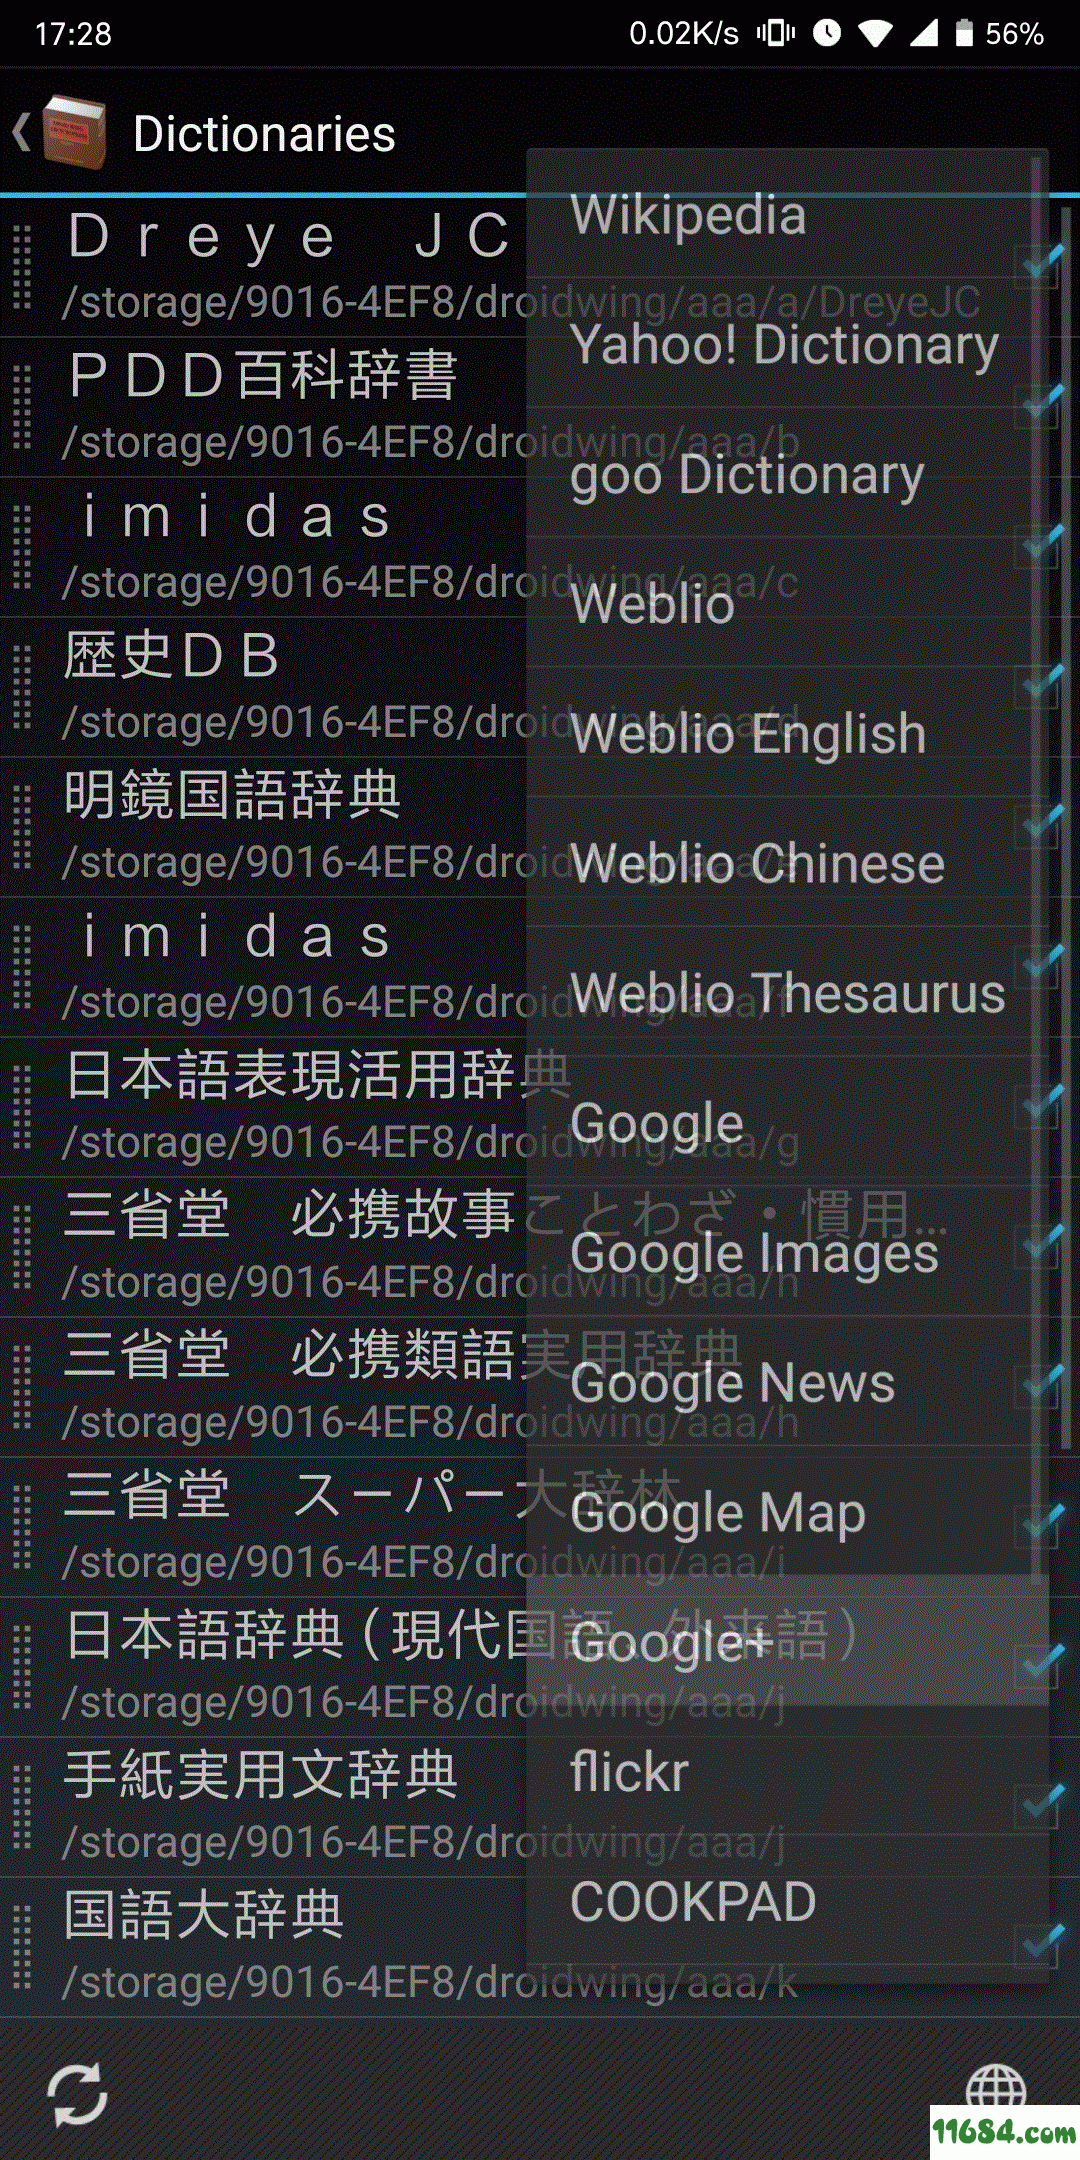 日语离线字典Droidwing 安卓版下载